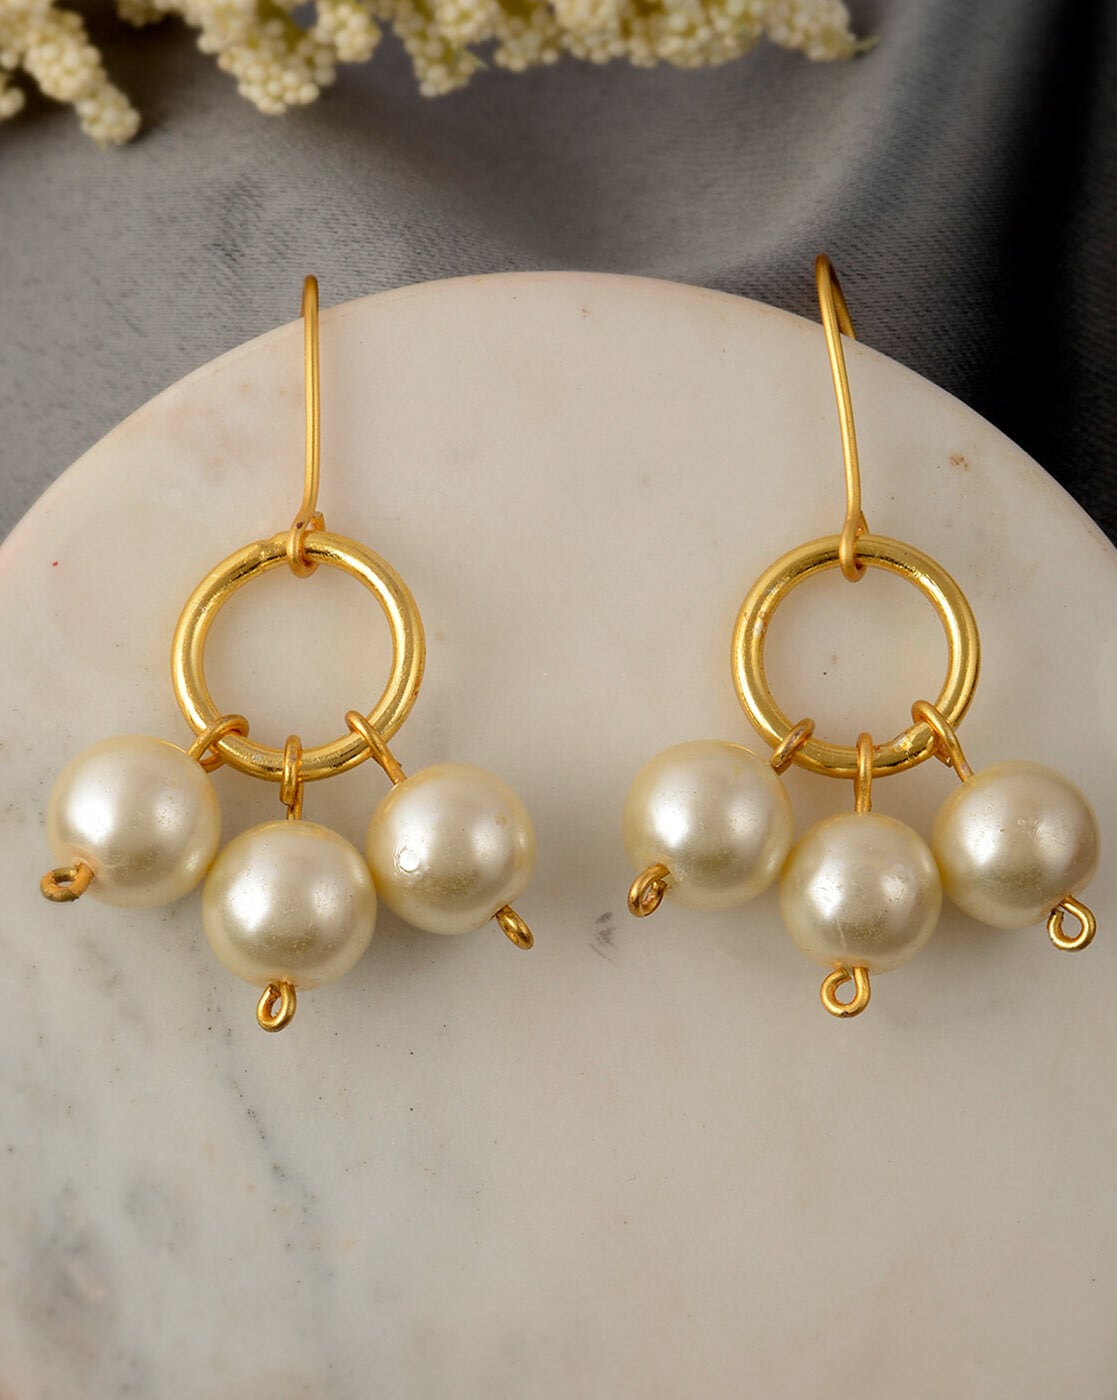 Buy Pearl Bead Earrings Online In India - Etsy India